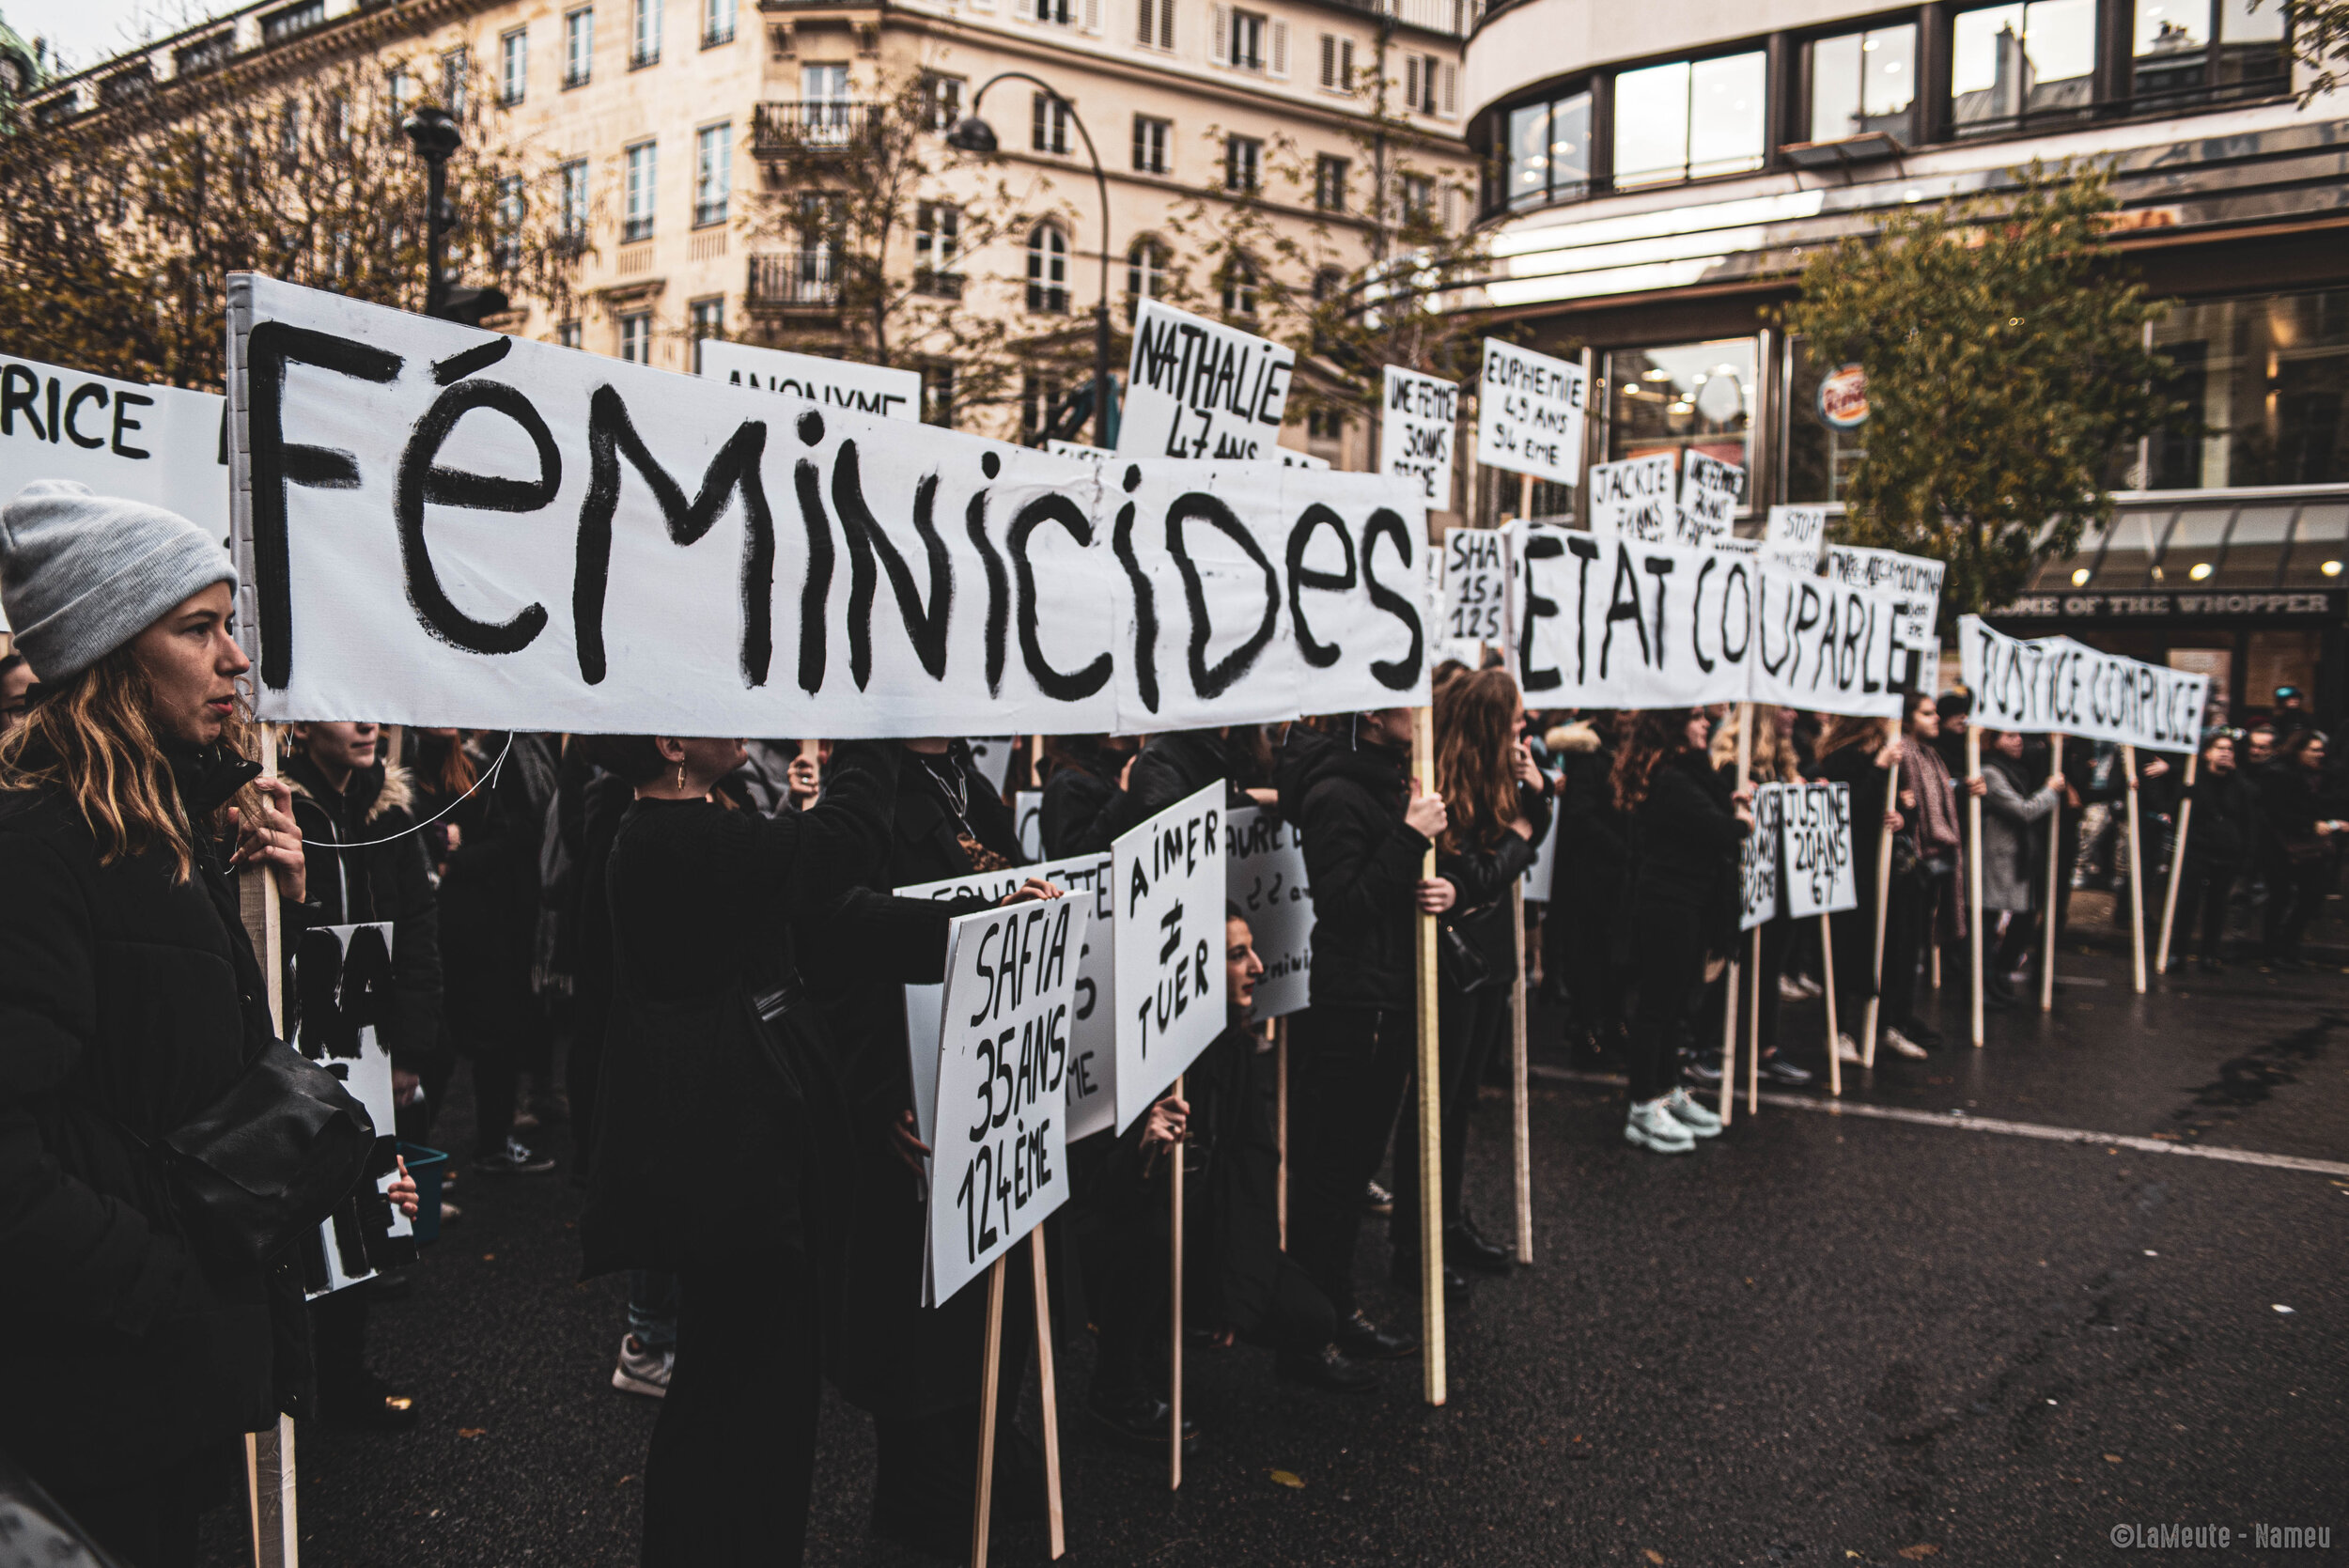  «&nbsp;Feminicides, état coupable, justice complice&nbsp;»  Cortège de Collages feminicides Paris.   